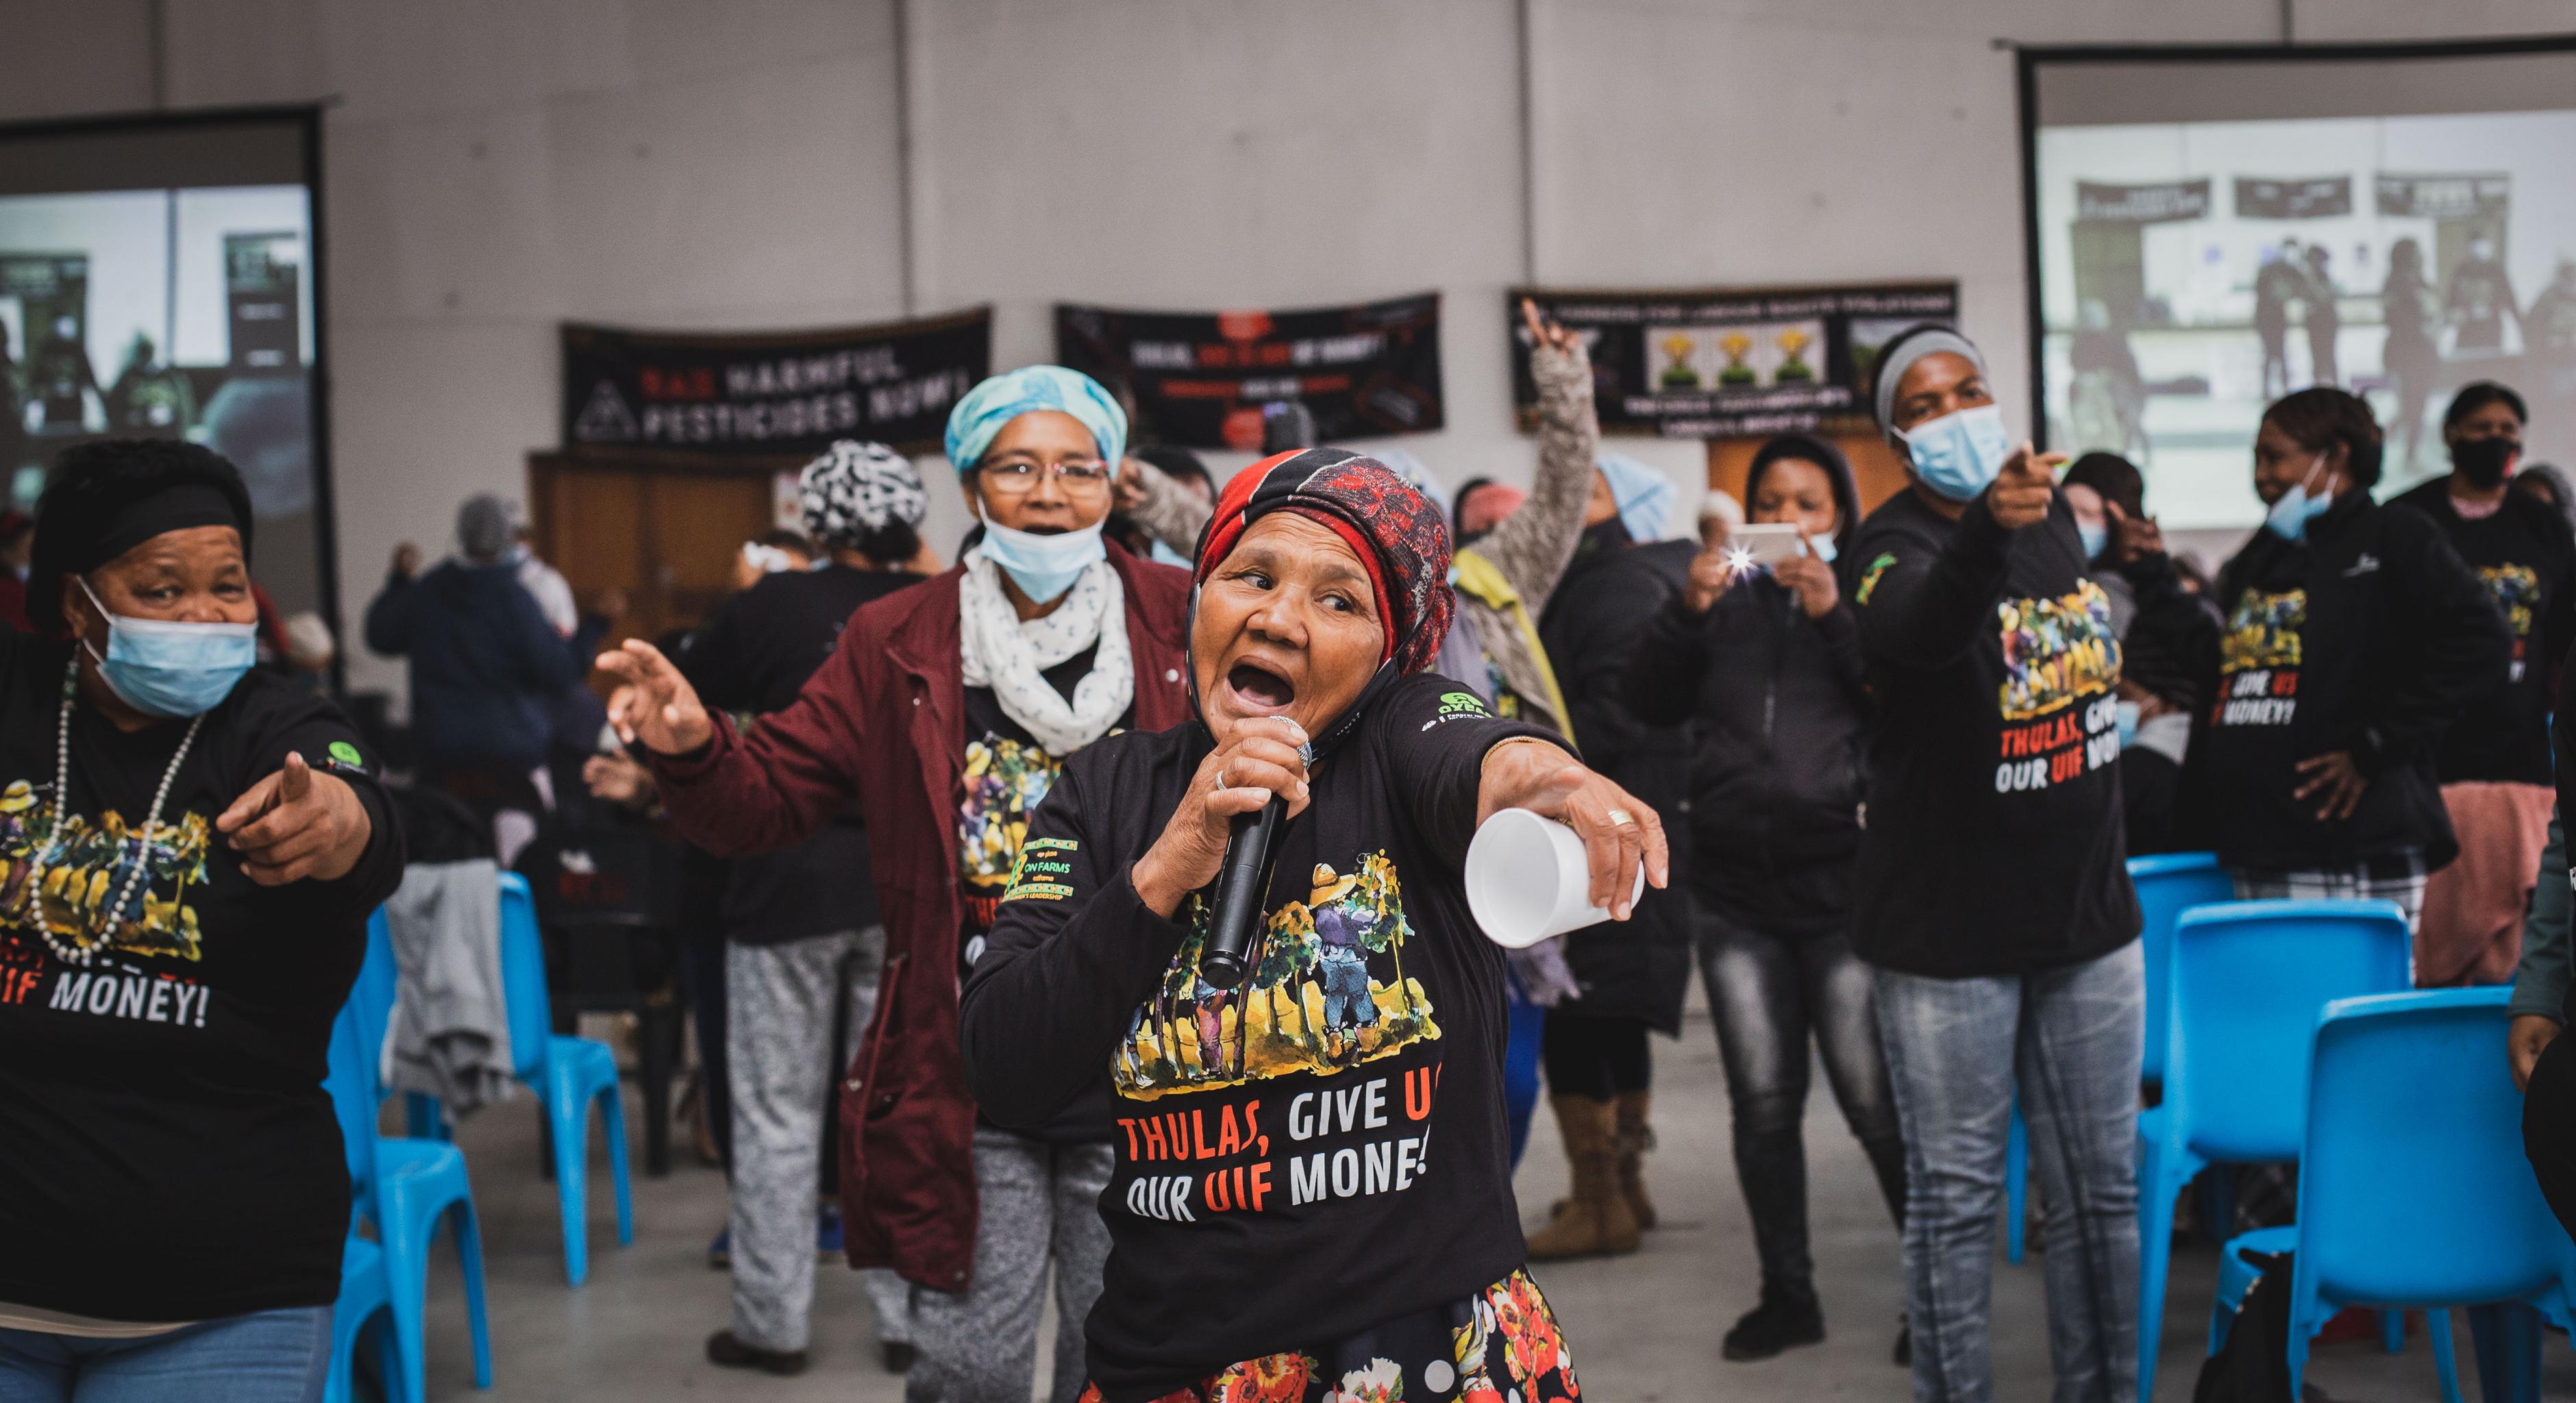 Eine Gruppe von Farmarbeiterinnen singen auf einer Protestaktion mit schwarzen Tshirts mit der Aufschrift "Thulas, give us our money".